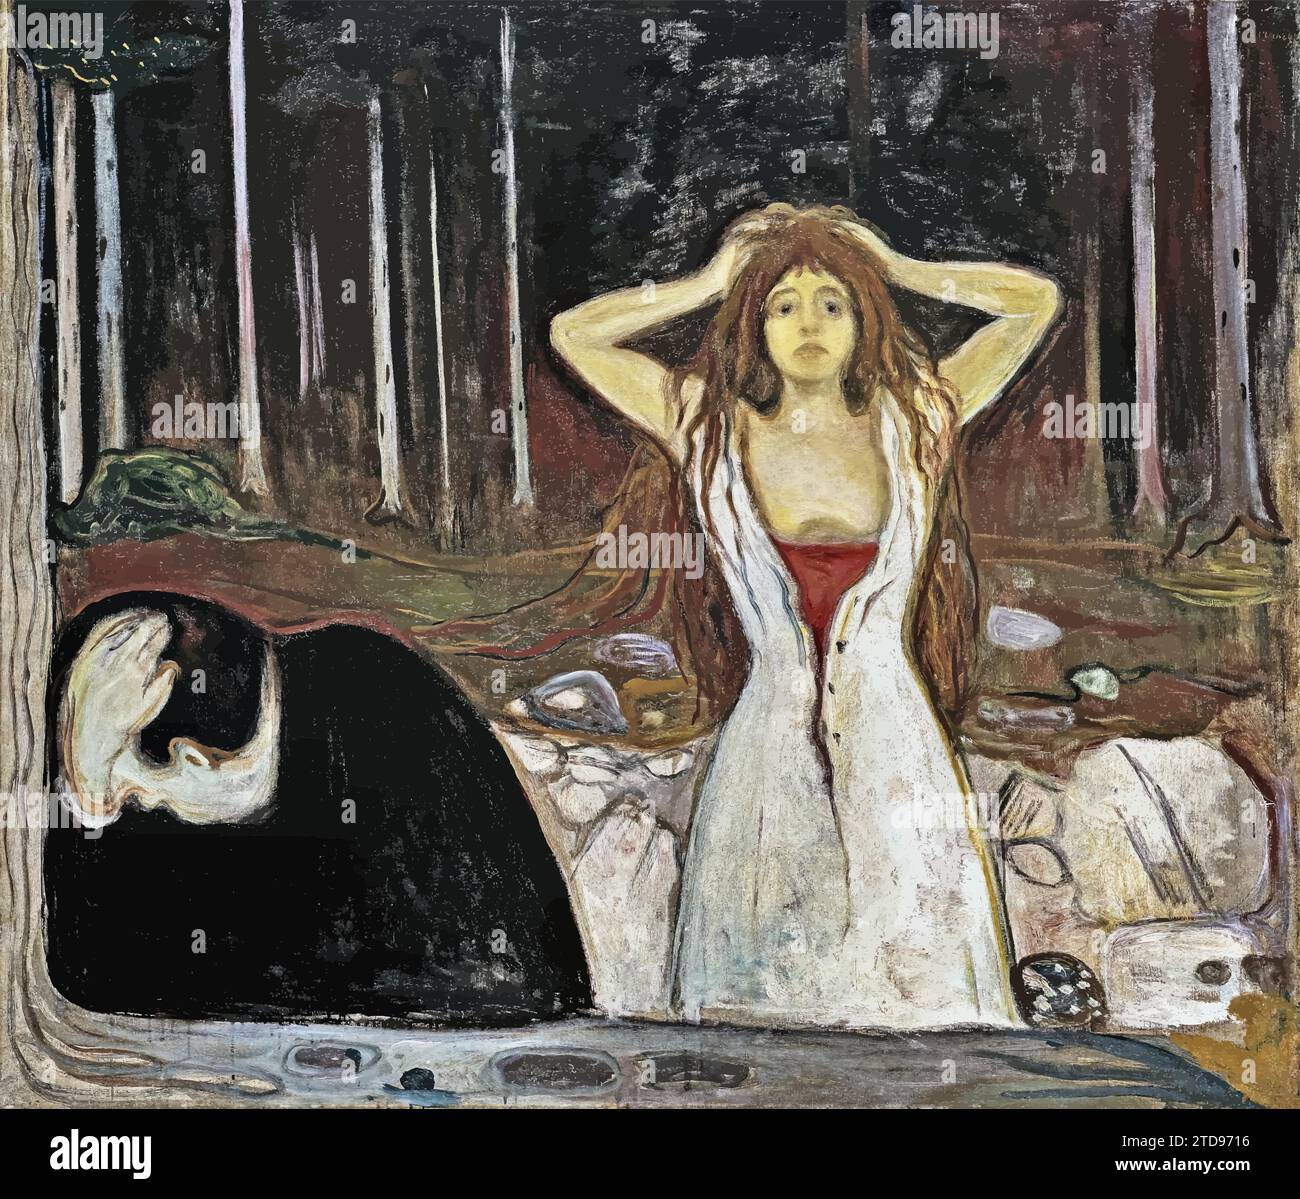 Ashes, 1895 (huile sur toile) de Artist Munch, Edvard (1863-1944) / Norvégien. Illustration de Vecteur